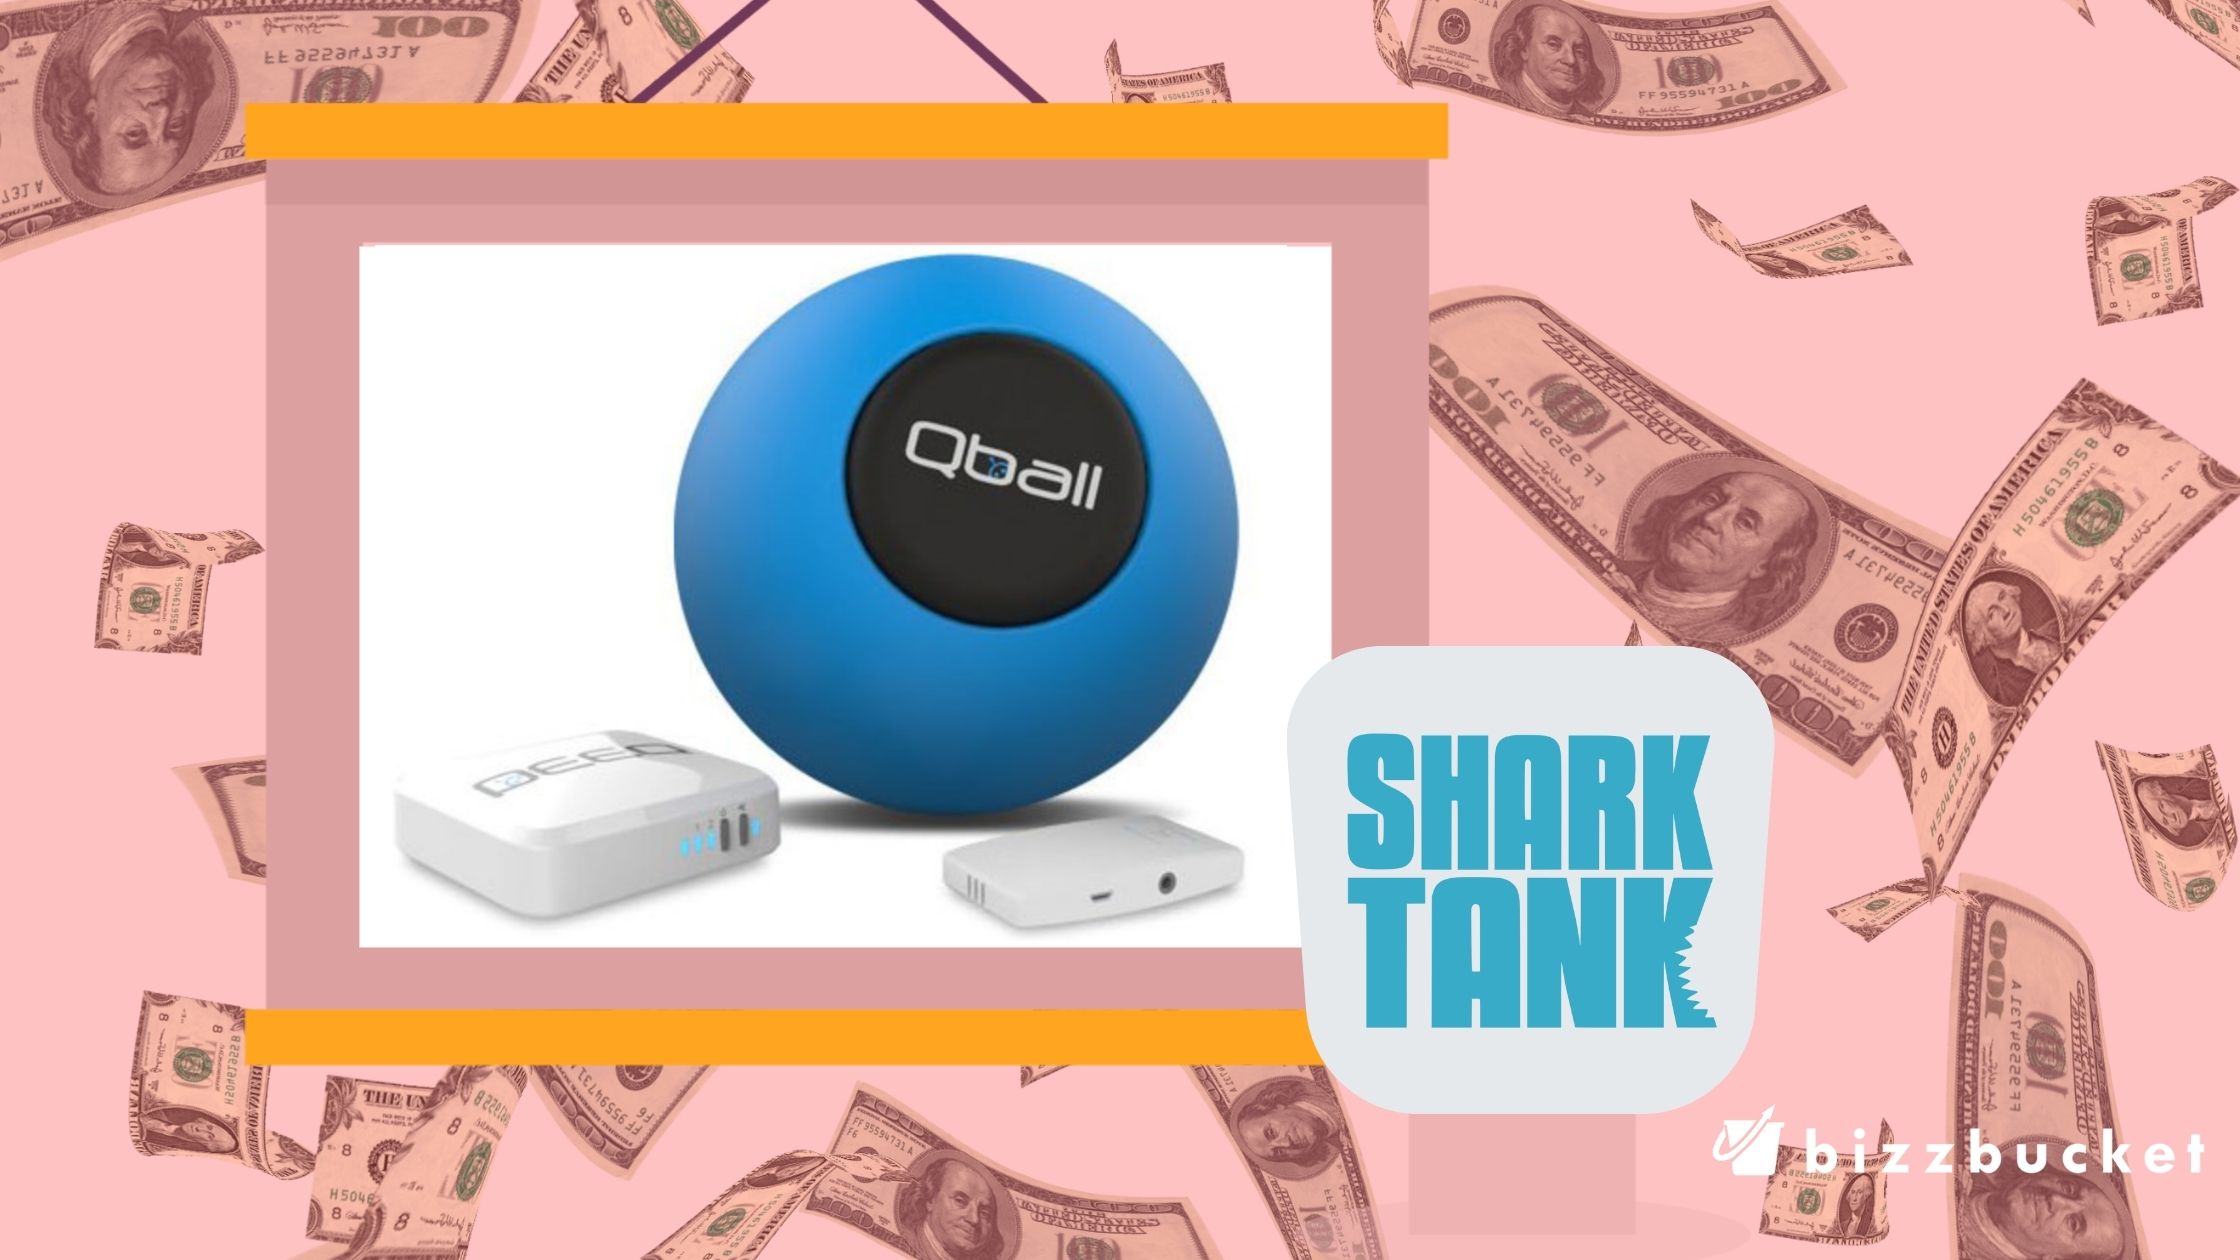 Qball shark tank update